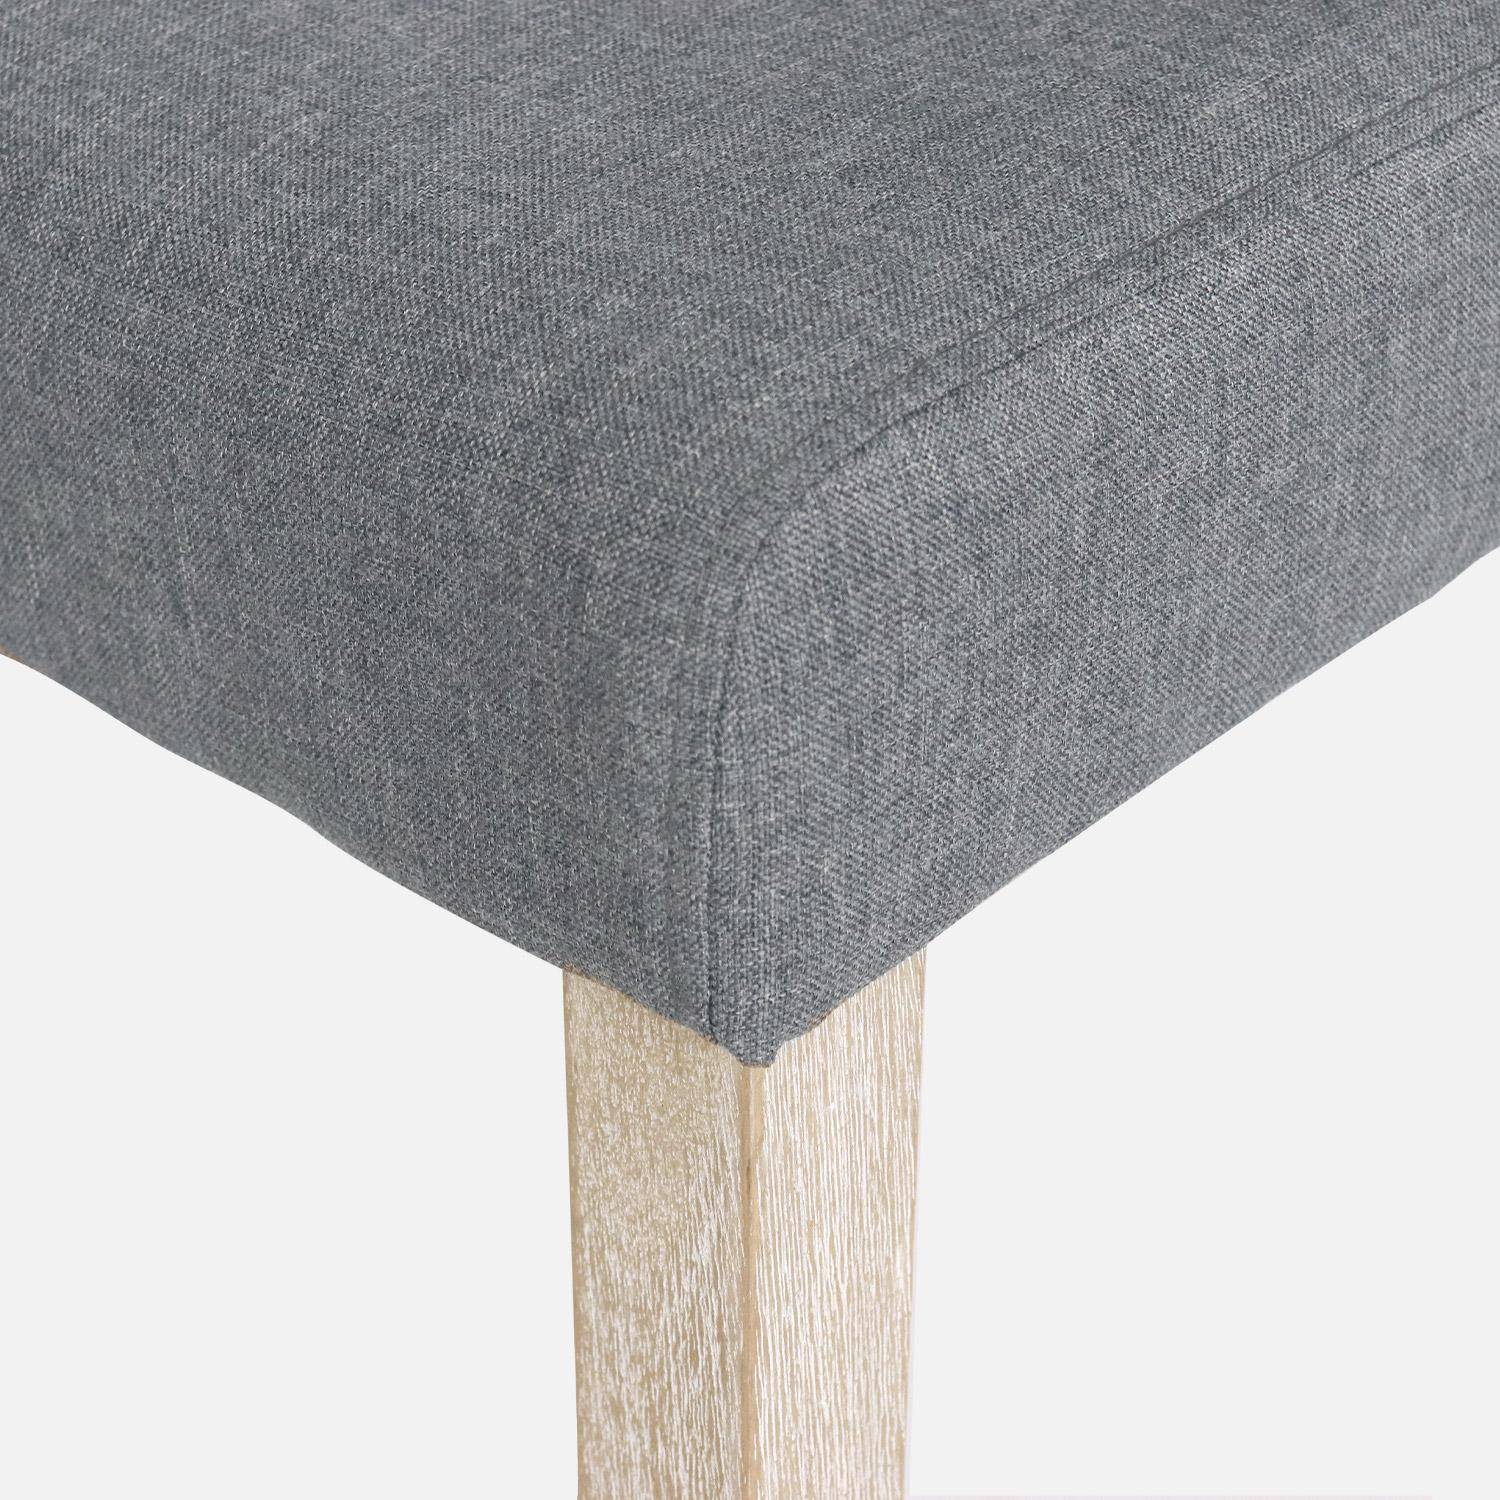 Set di 4 sedie - Rita - sedie in tessuto, gambe in legno ceruleo, grigio chiaro Photo5